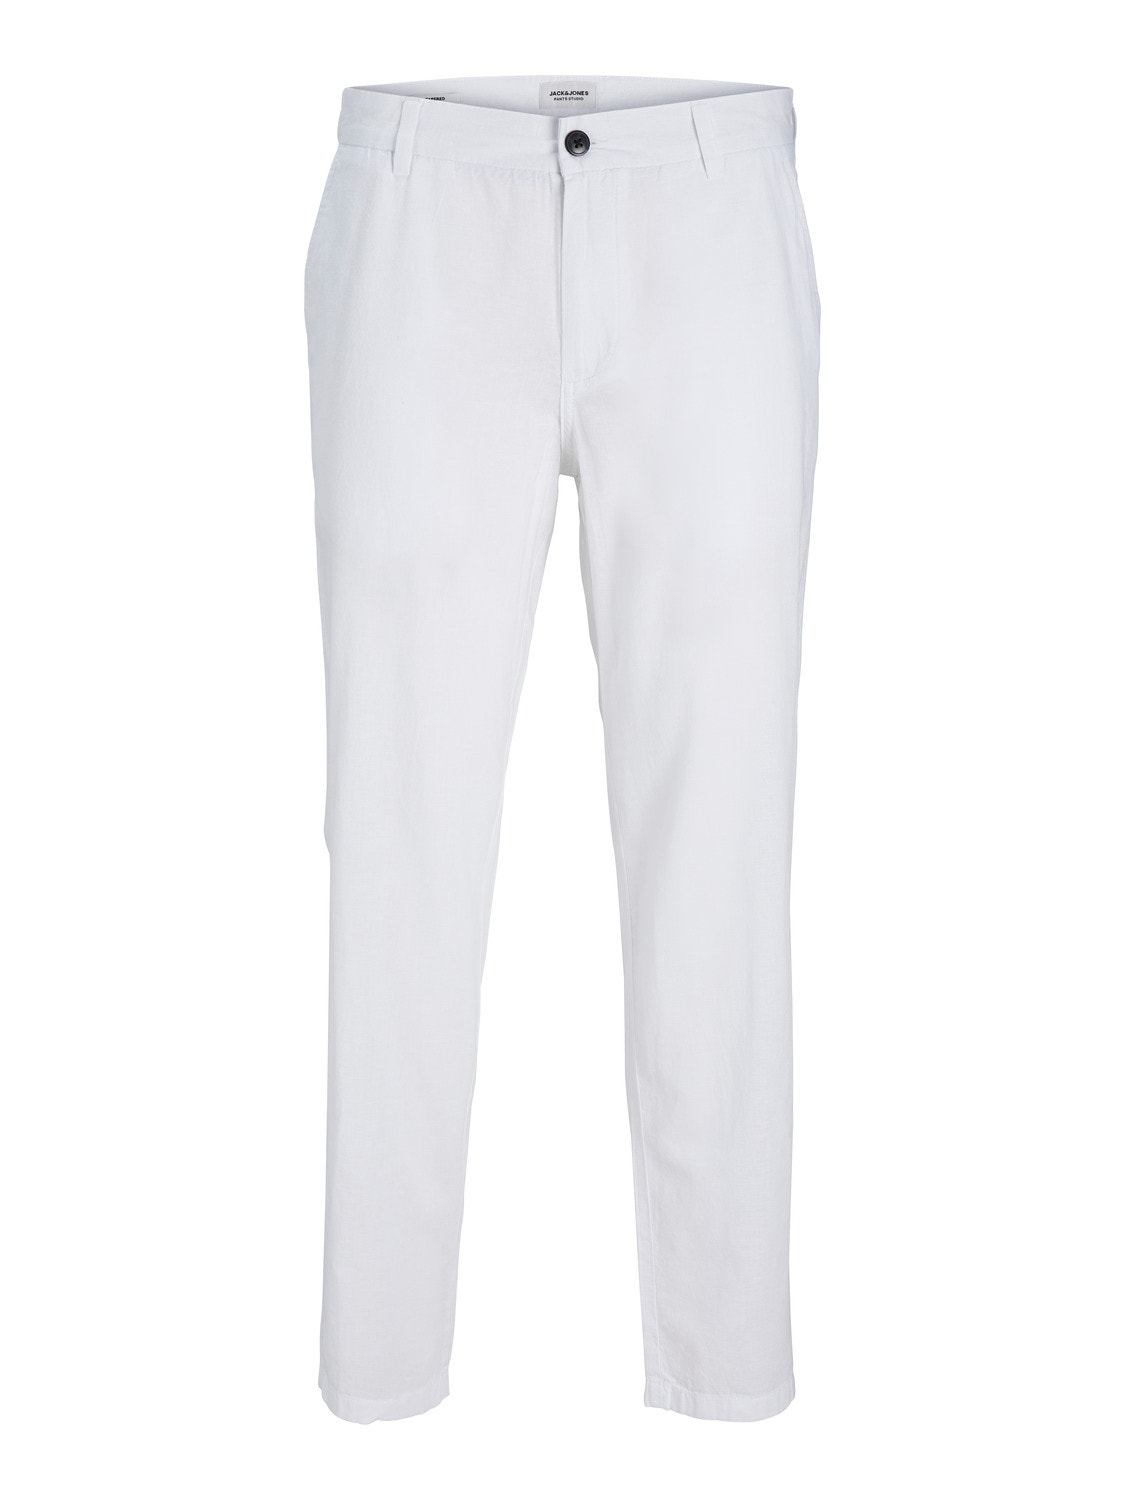 Jack & Jones Tapered Fit Plátěné kalhoty Chino -Bright White - 12248604